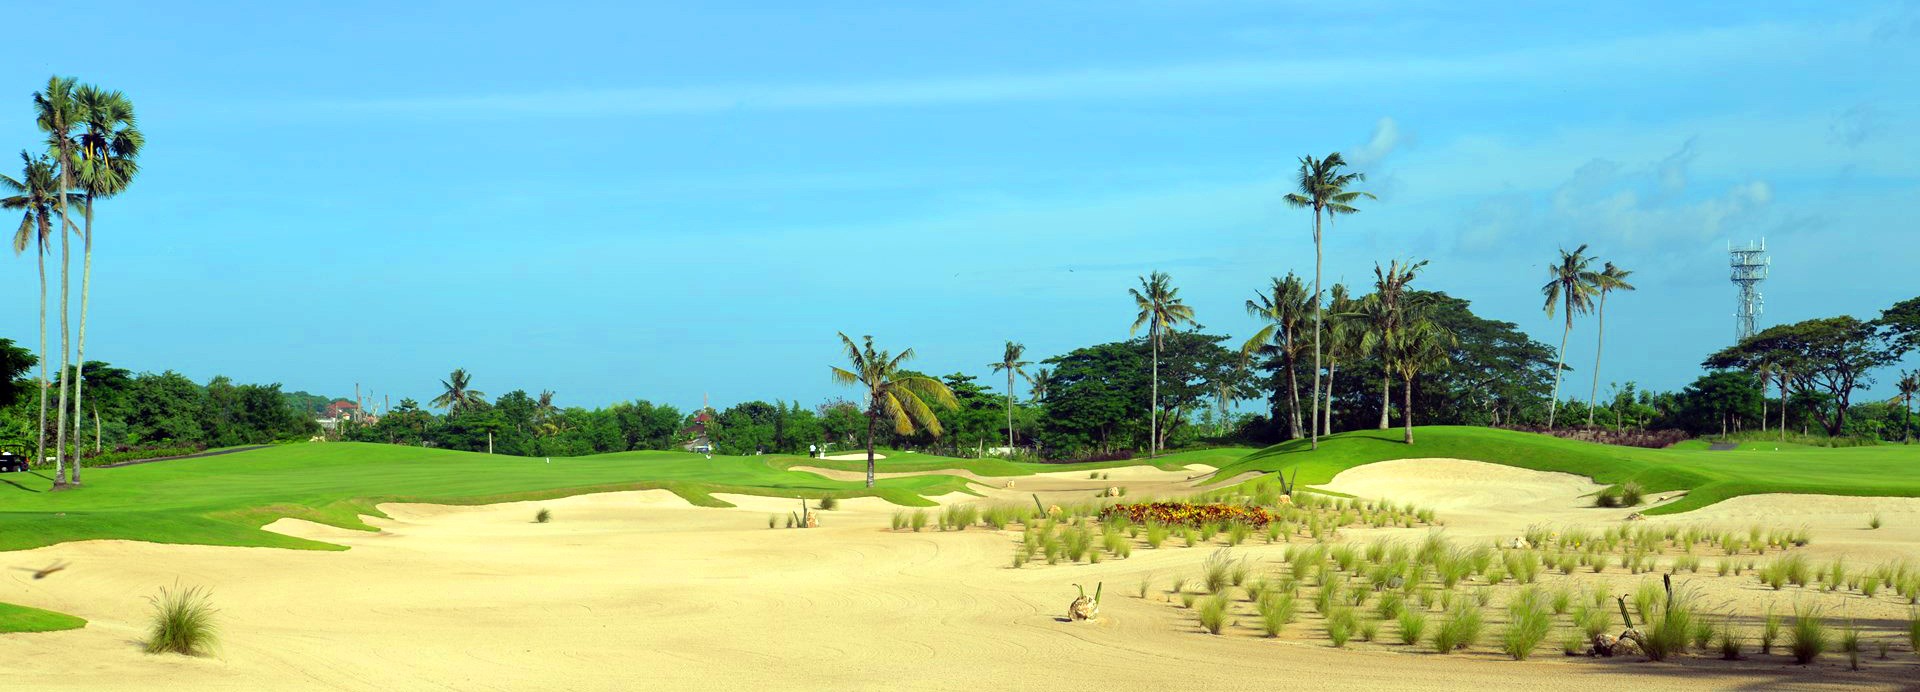 Bali National Golf Club  | Golfové zájezdy, golfová dovolená, luxusní golf